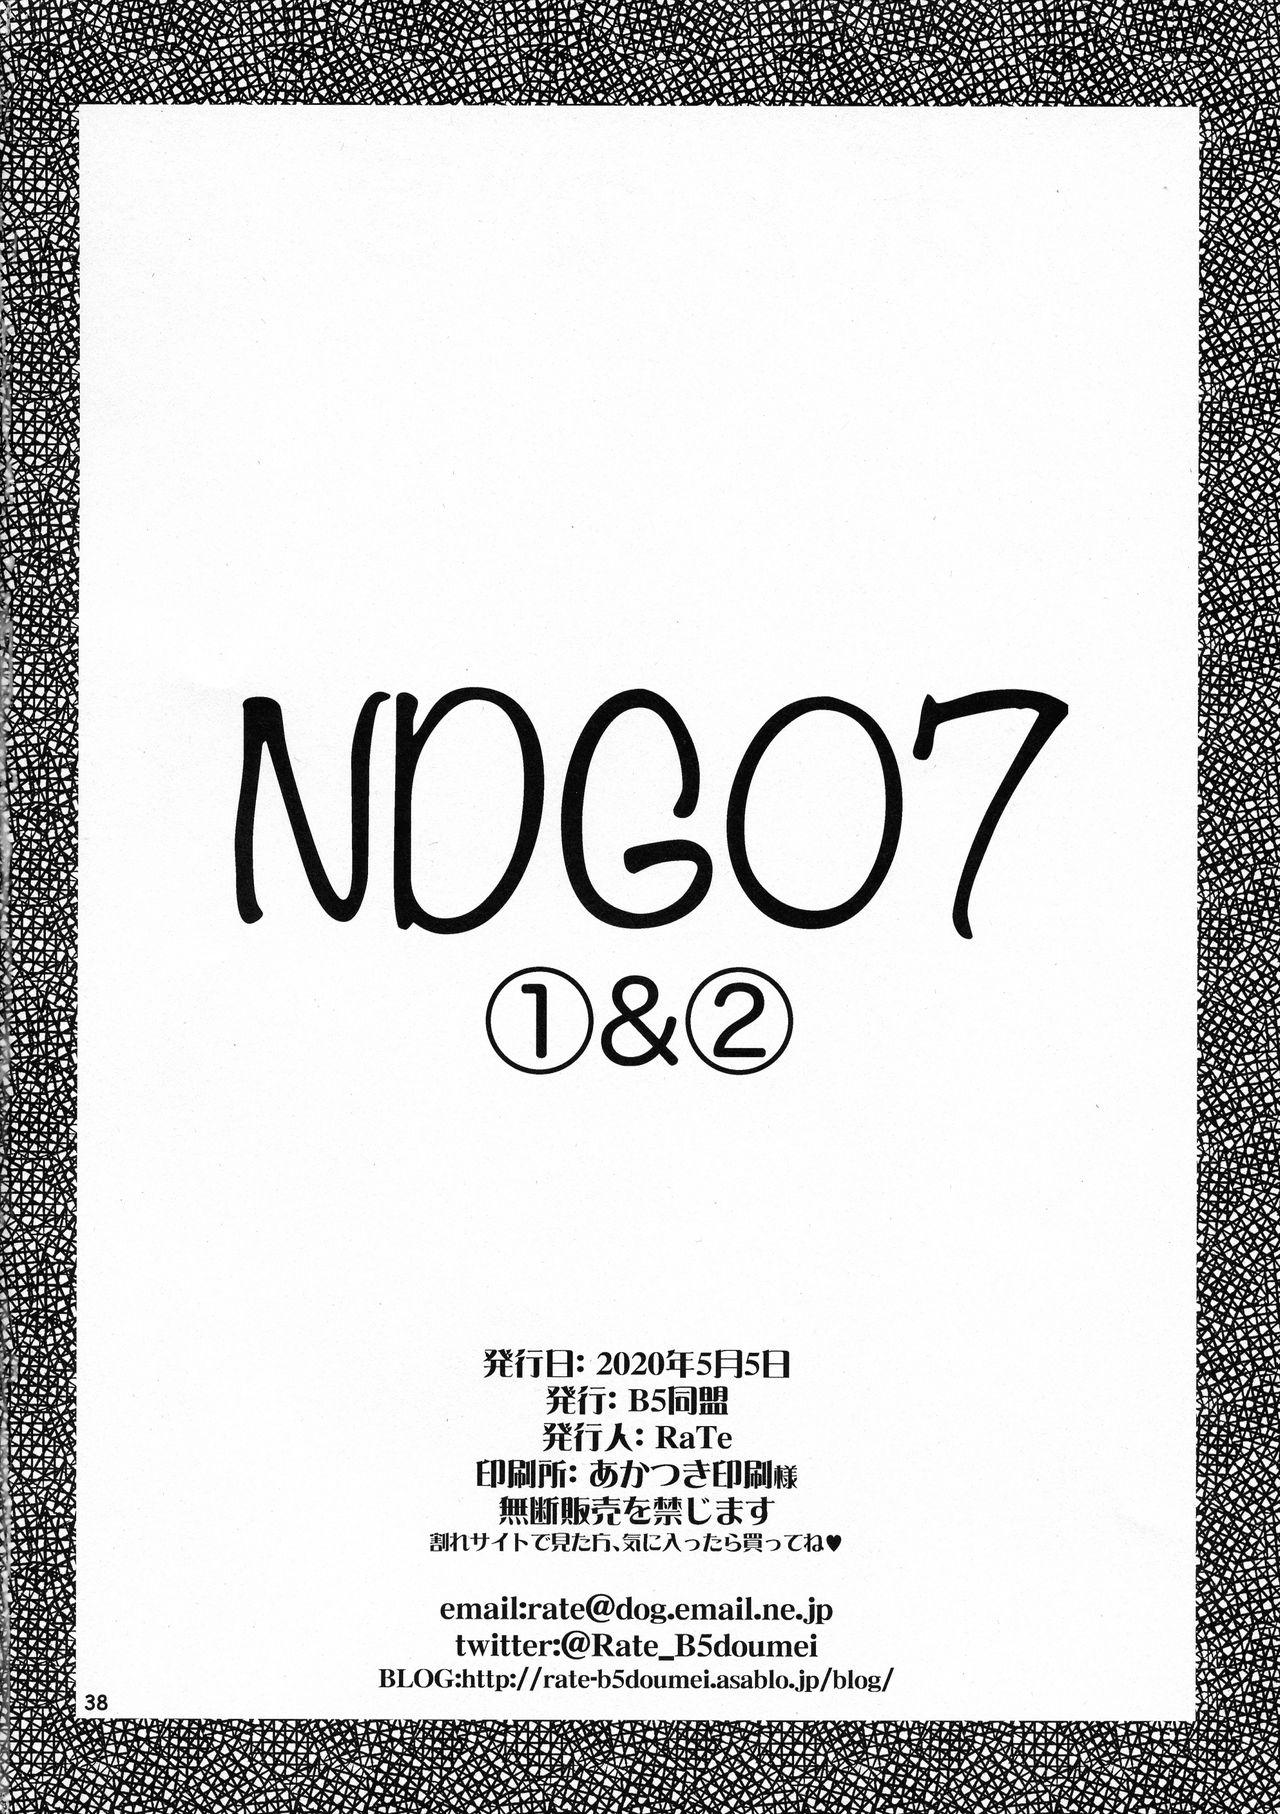 NDG07 1&2 35